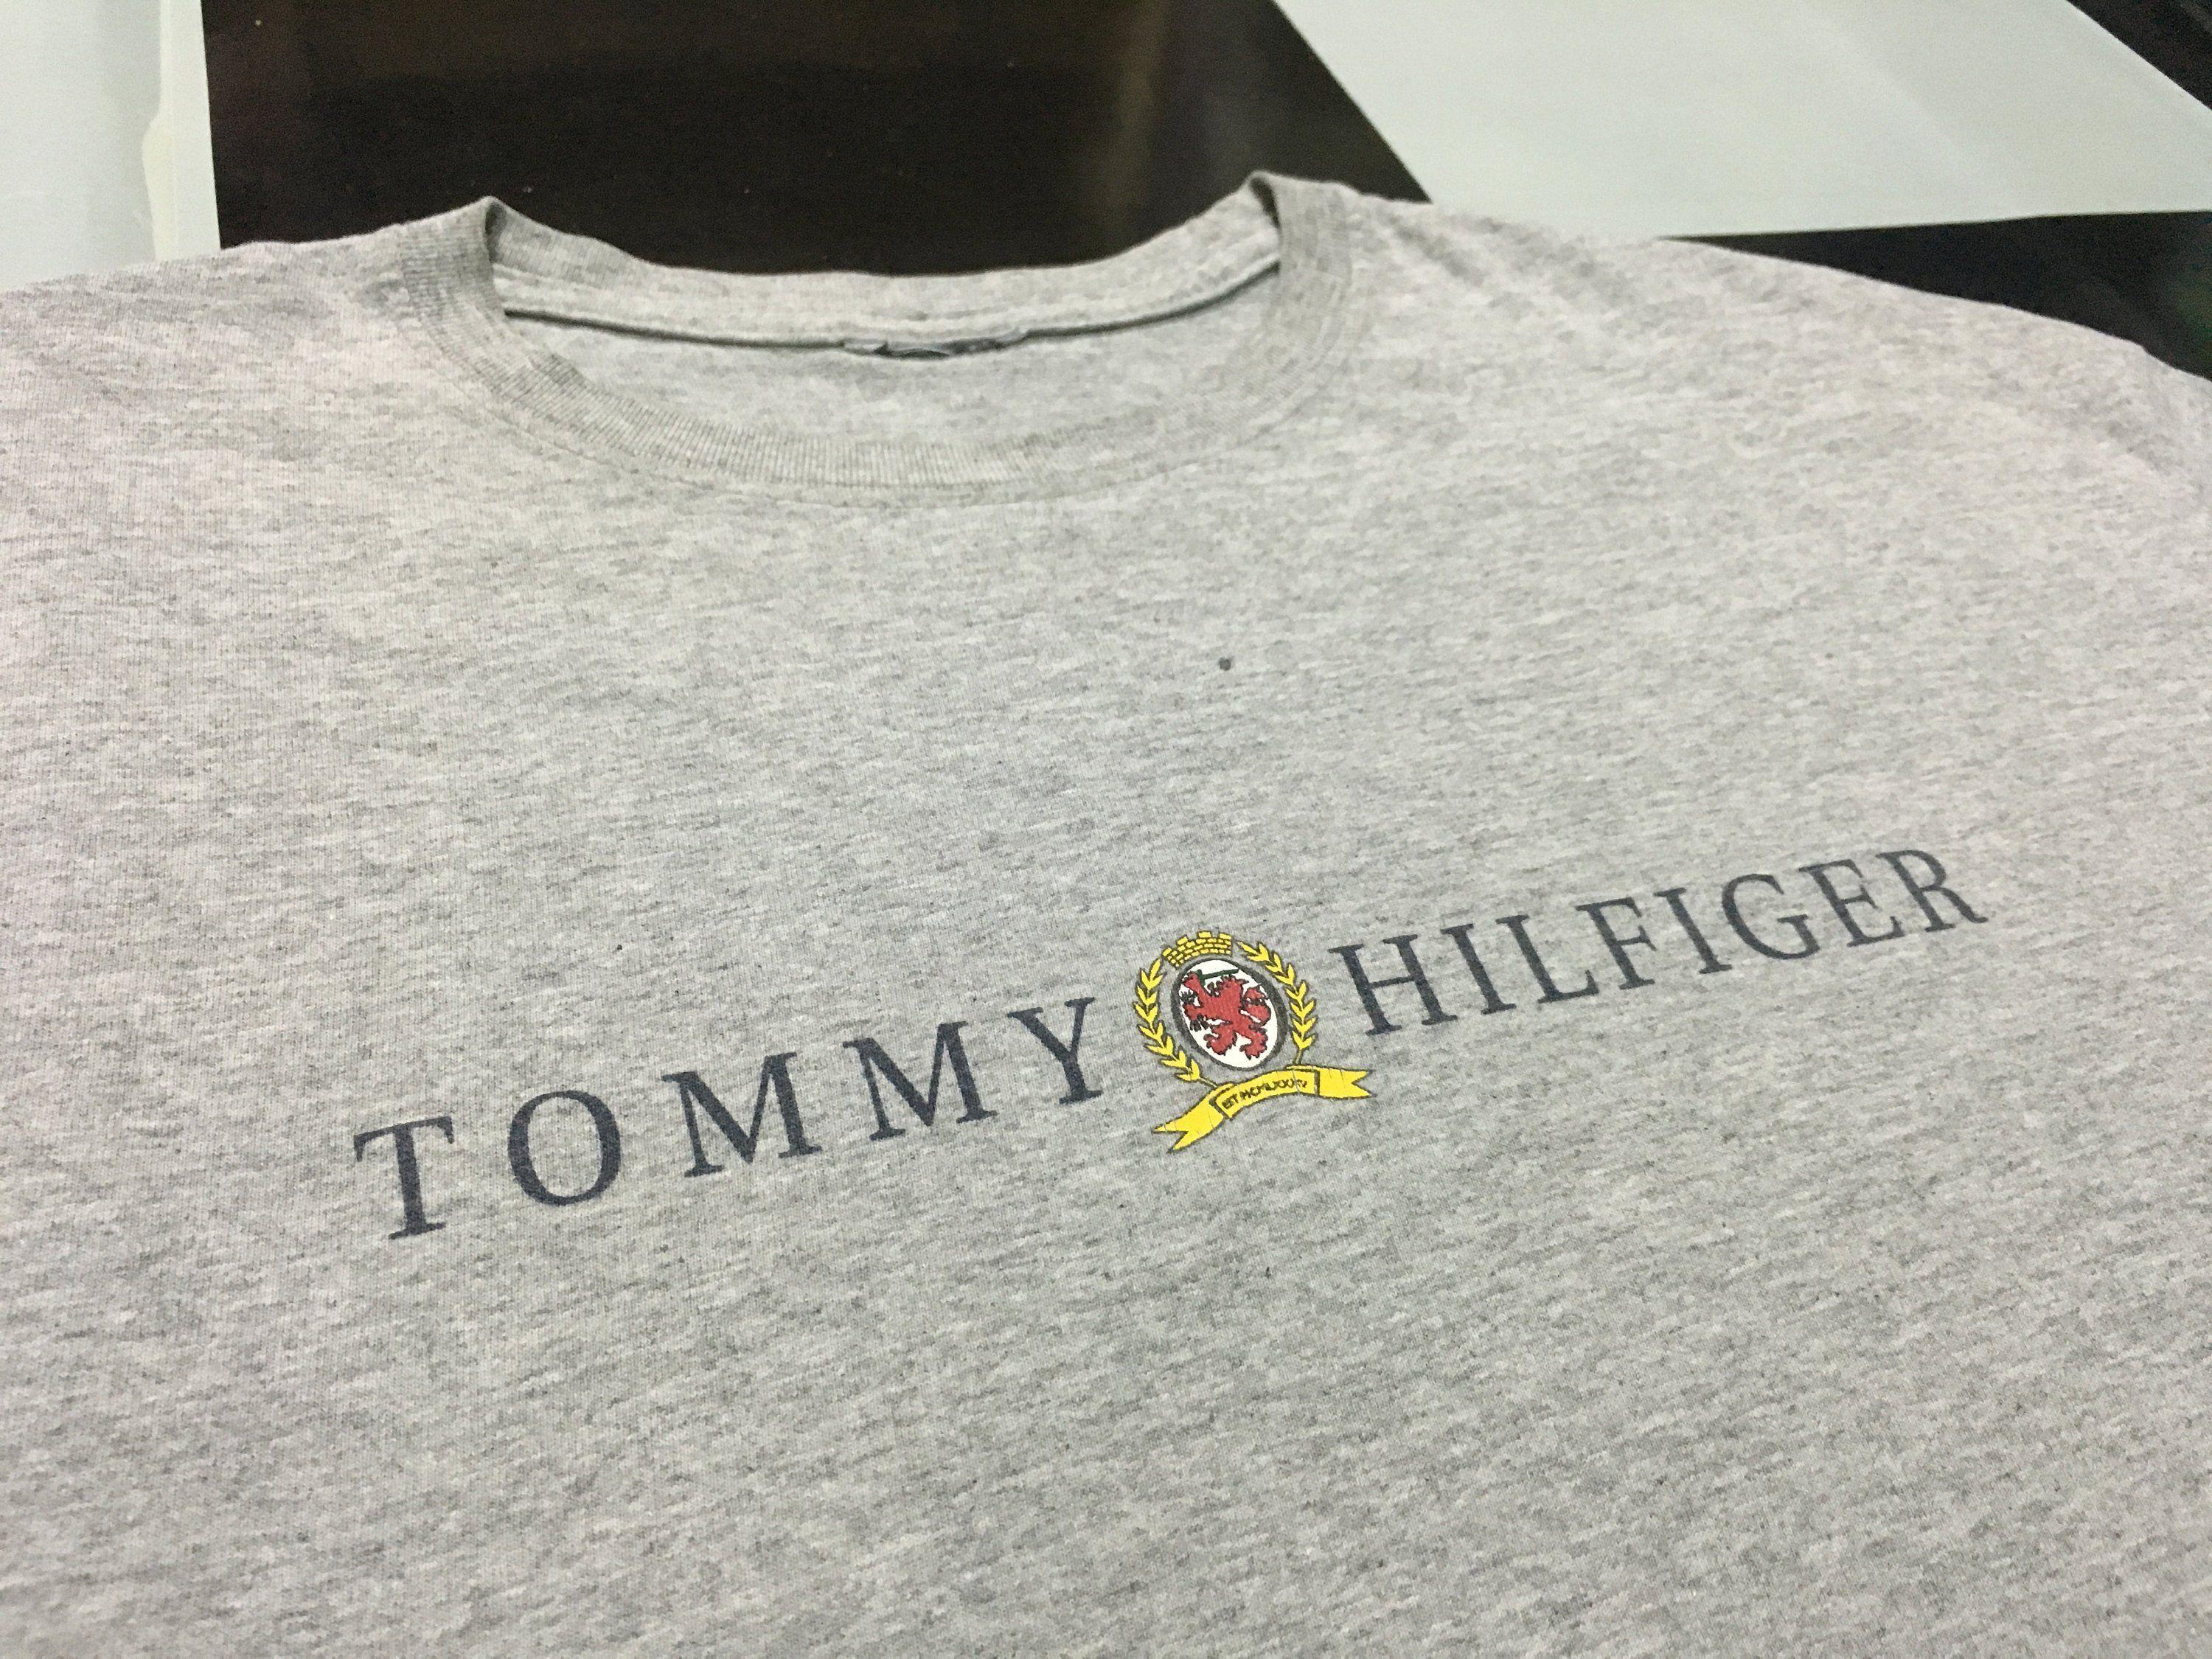 Tommy Hilfiger Lion Logo - Vintage Tommy hilfiger t shirt spell out logo lion crest Gray Size L ...